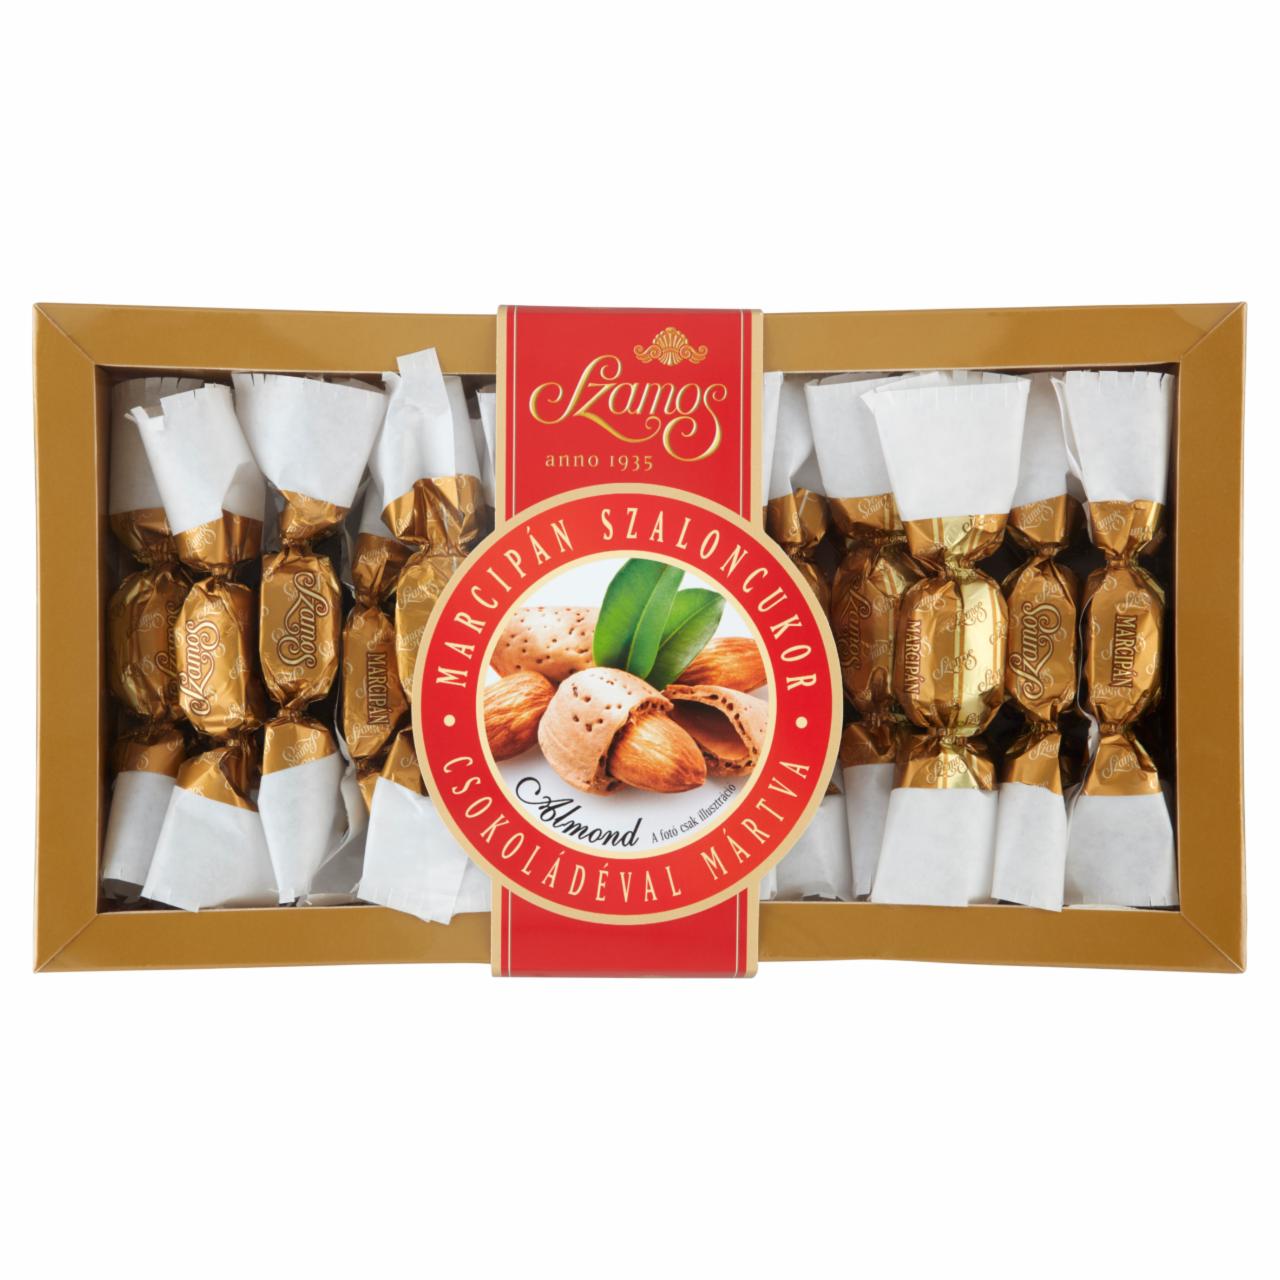 Képek - Szamos marcipán szaloncukor csokoládéval mártva 250 g